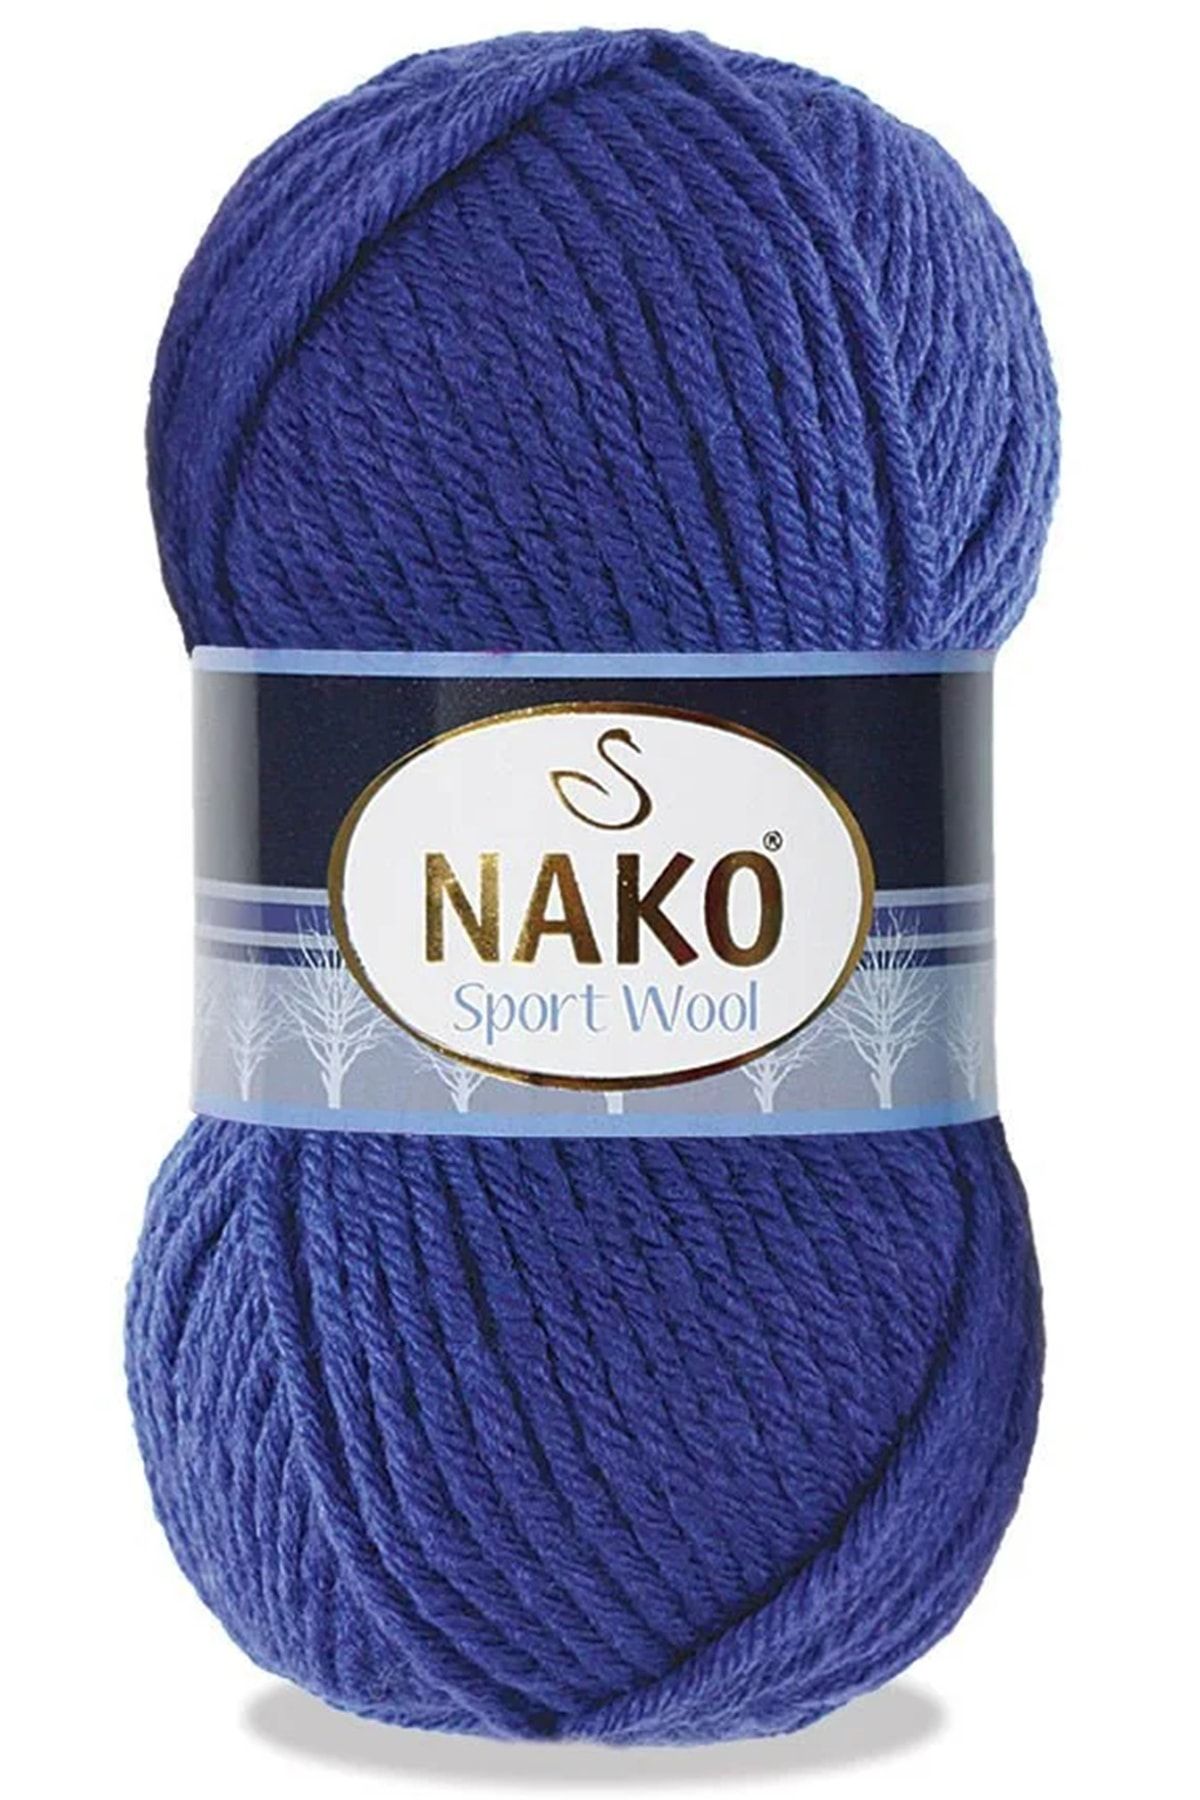 Nako Sport Wool 10472 Saks Mavi Yünlü Atkı Bere Battaniye Ipi 5 Adet 1 Adet Ponpon Hediyeli